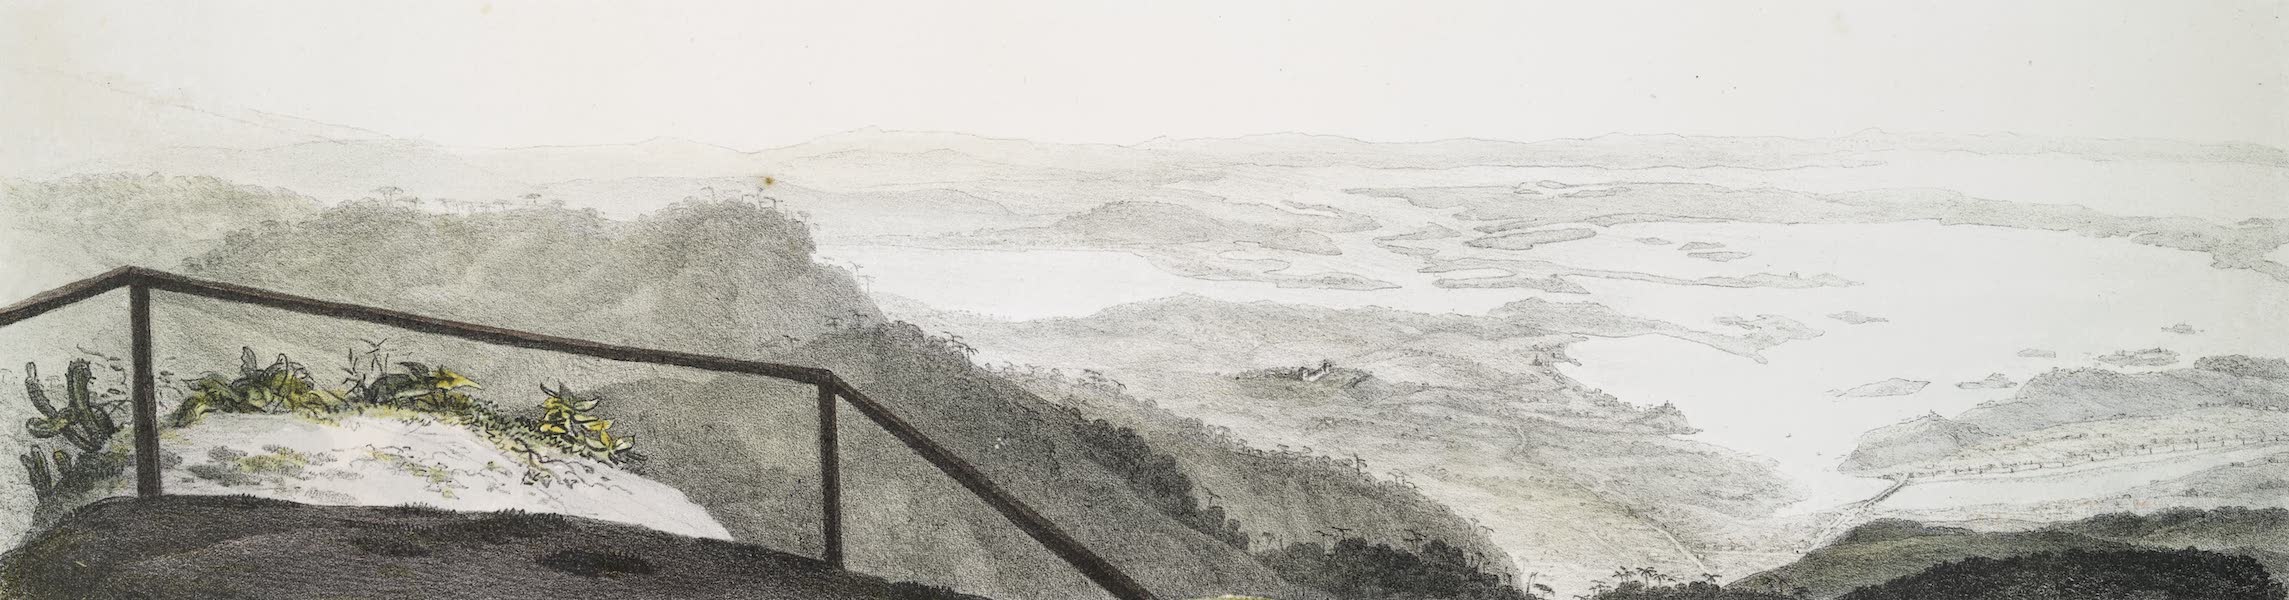 Voyage Pittoresque et Historique au Bresil Vol. 3 - Panorama de l'intérieur de la Baie de Rio de Janeiro [II] (1839)